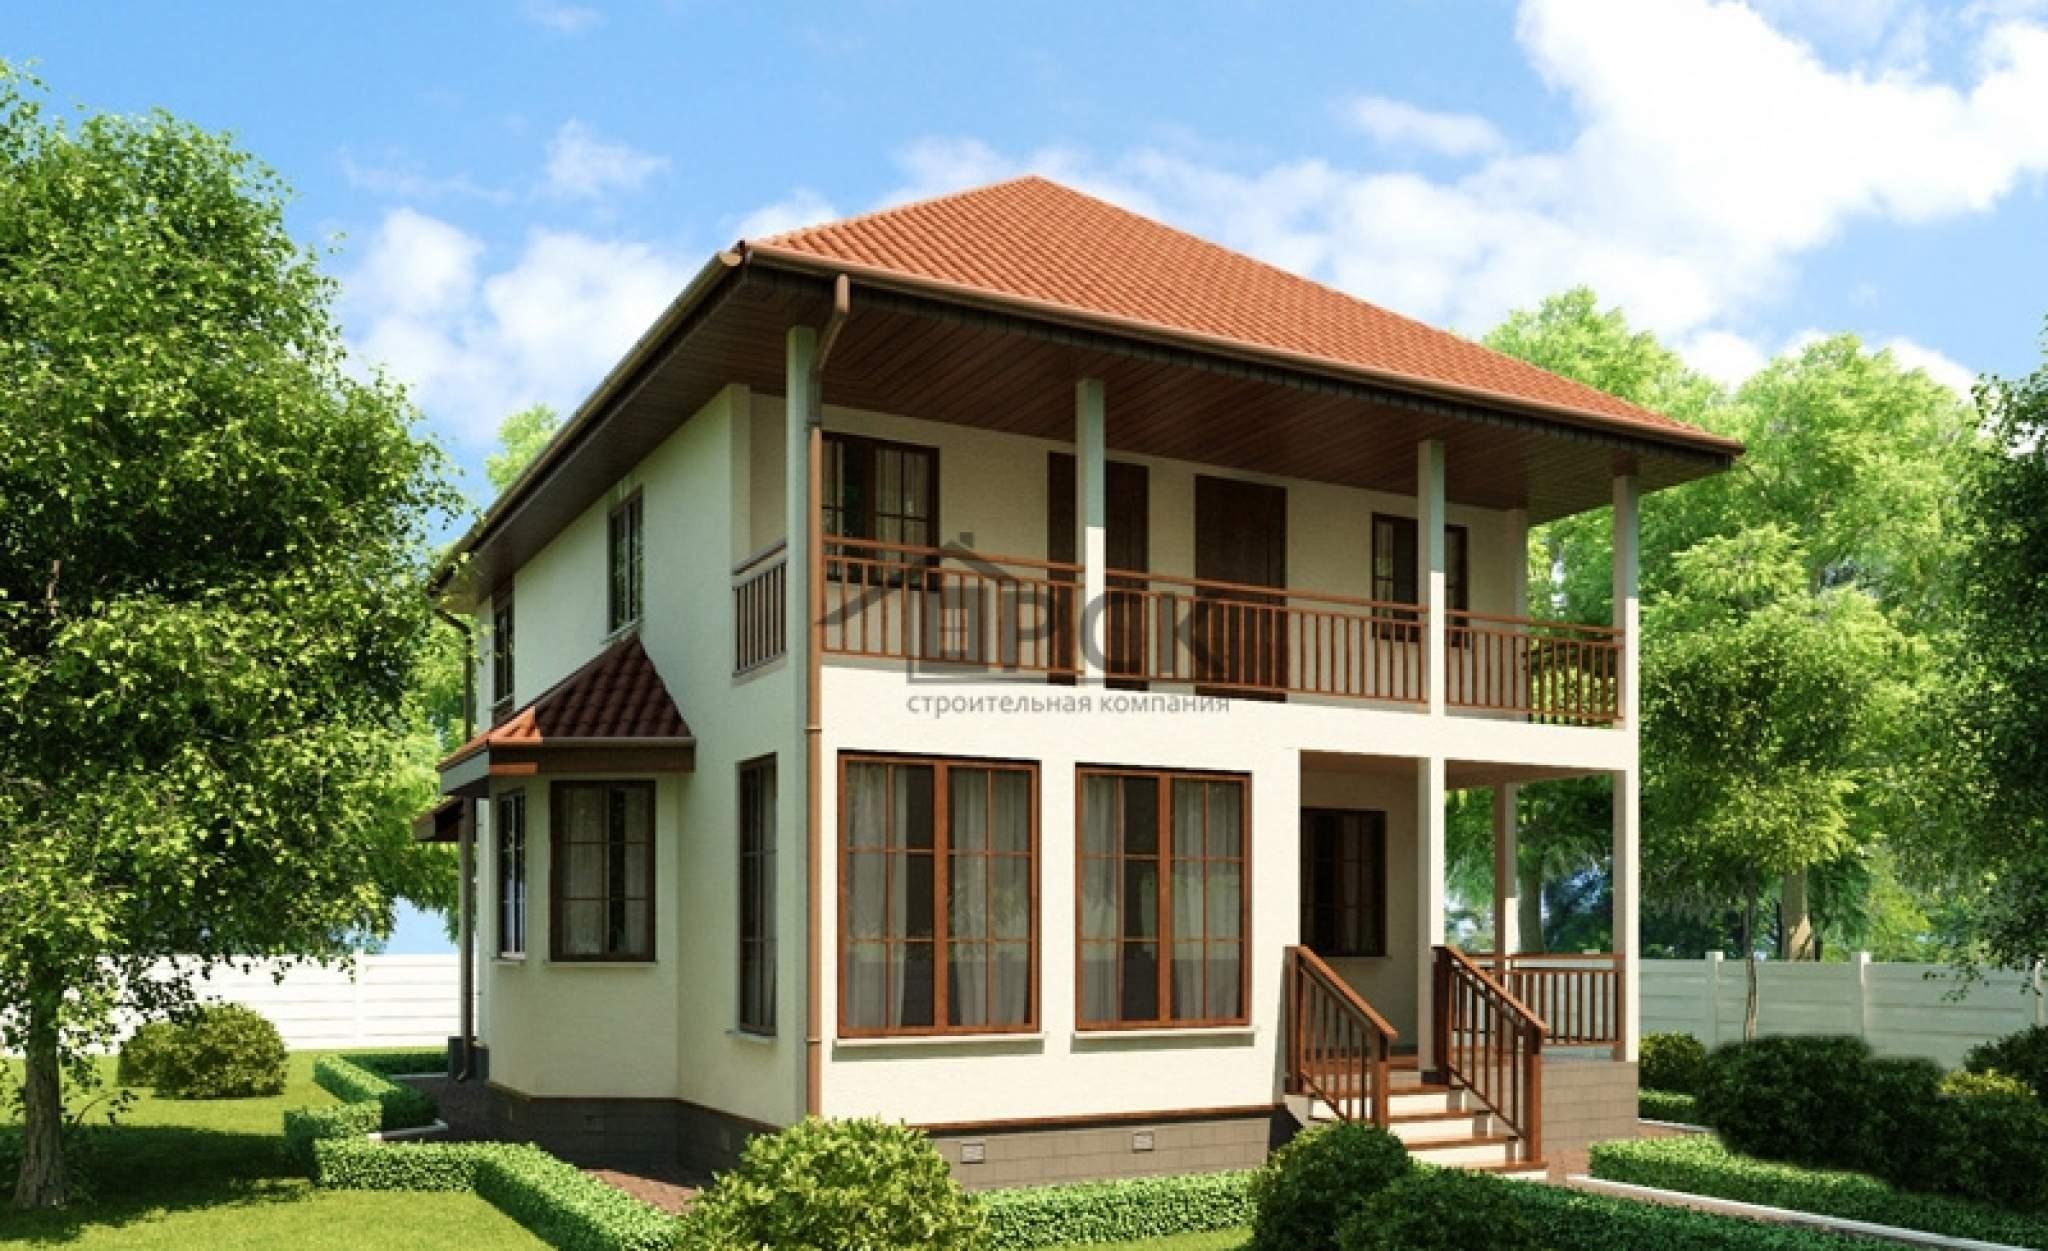 Фото дом двухэтажный с балконом и террасой фото